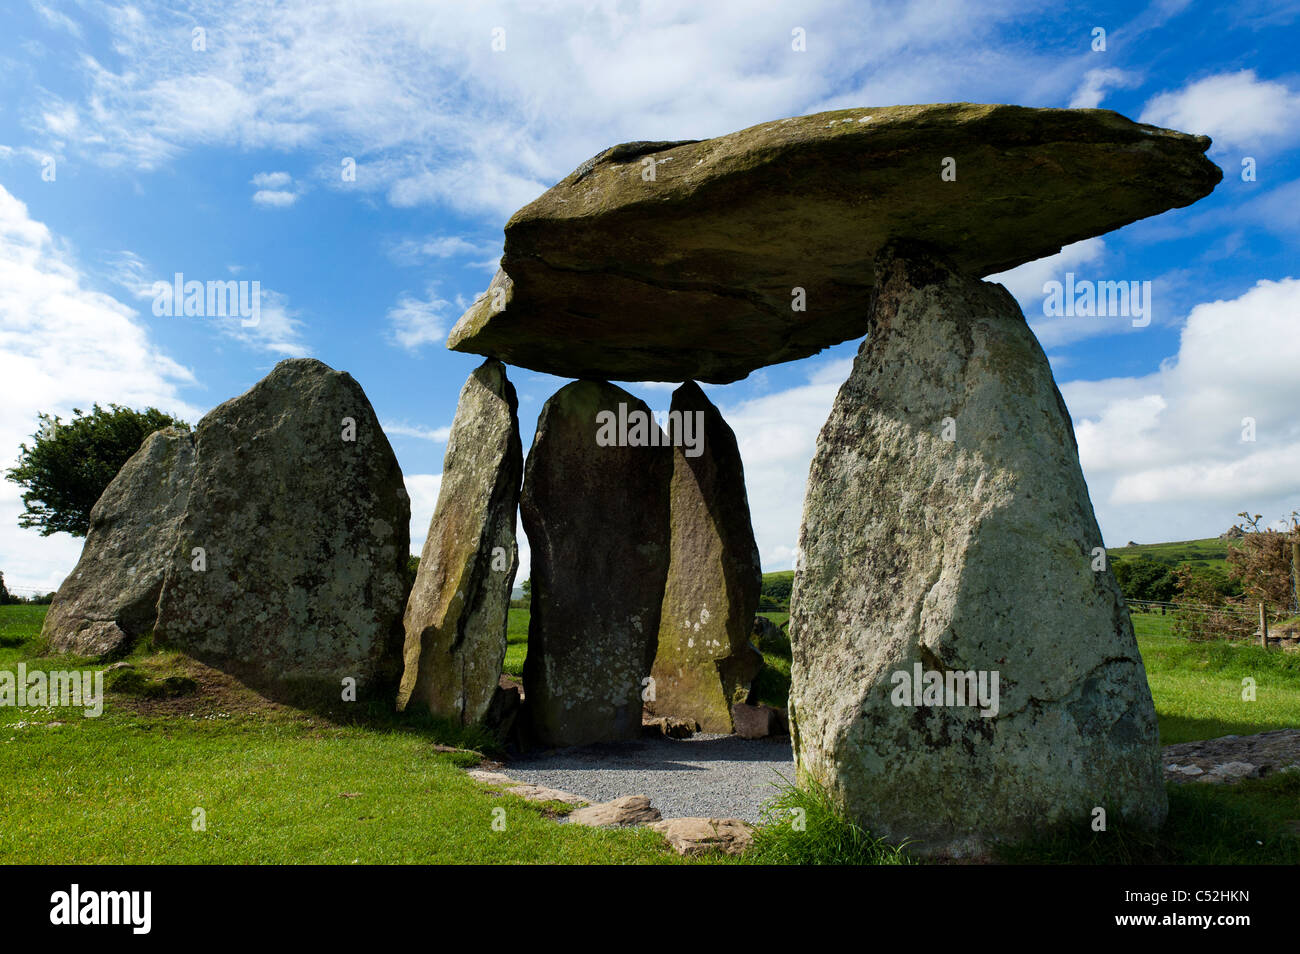 Pentre Ifan néolithique mégalithique de sépulture dans l'ouest du pays de Galles Pembrokeshire Banque D'Images